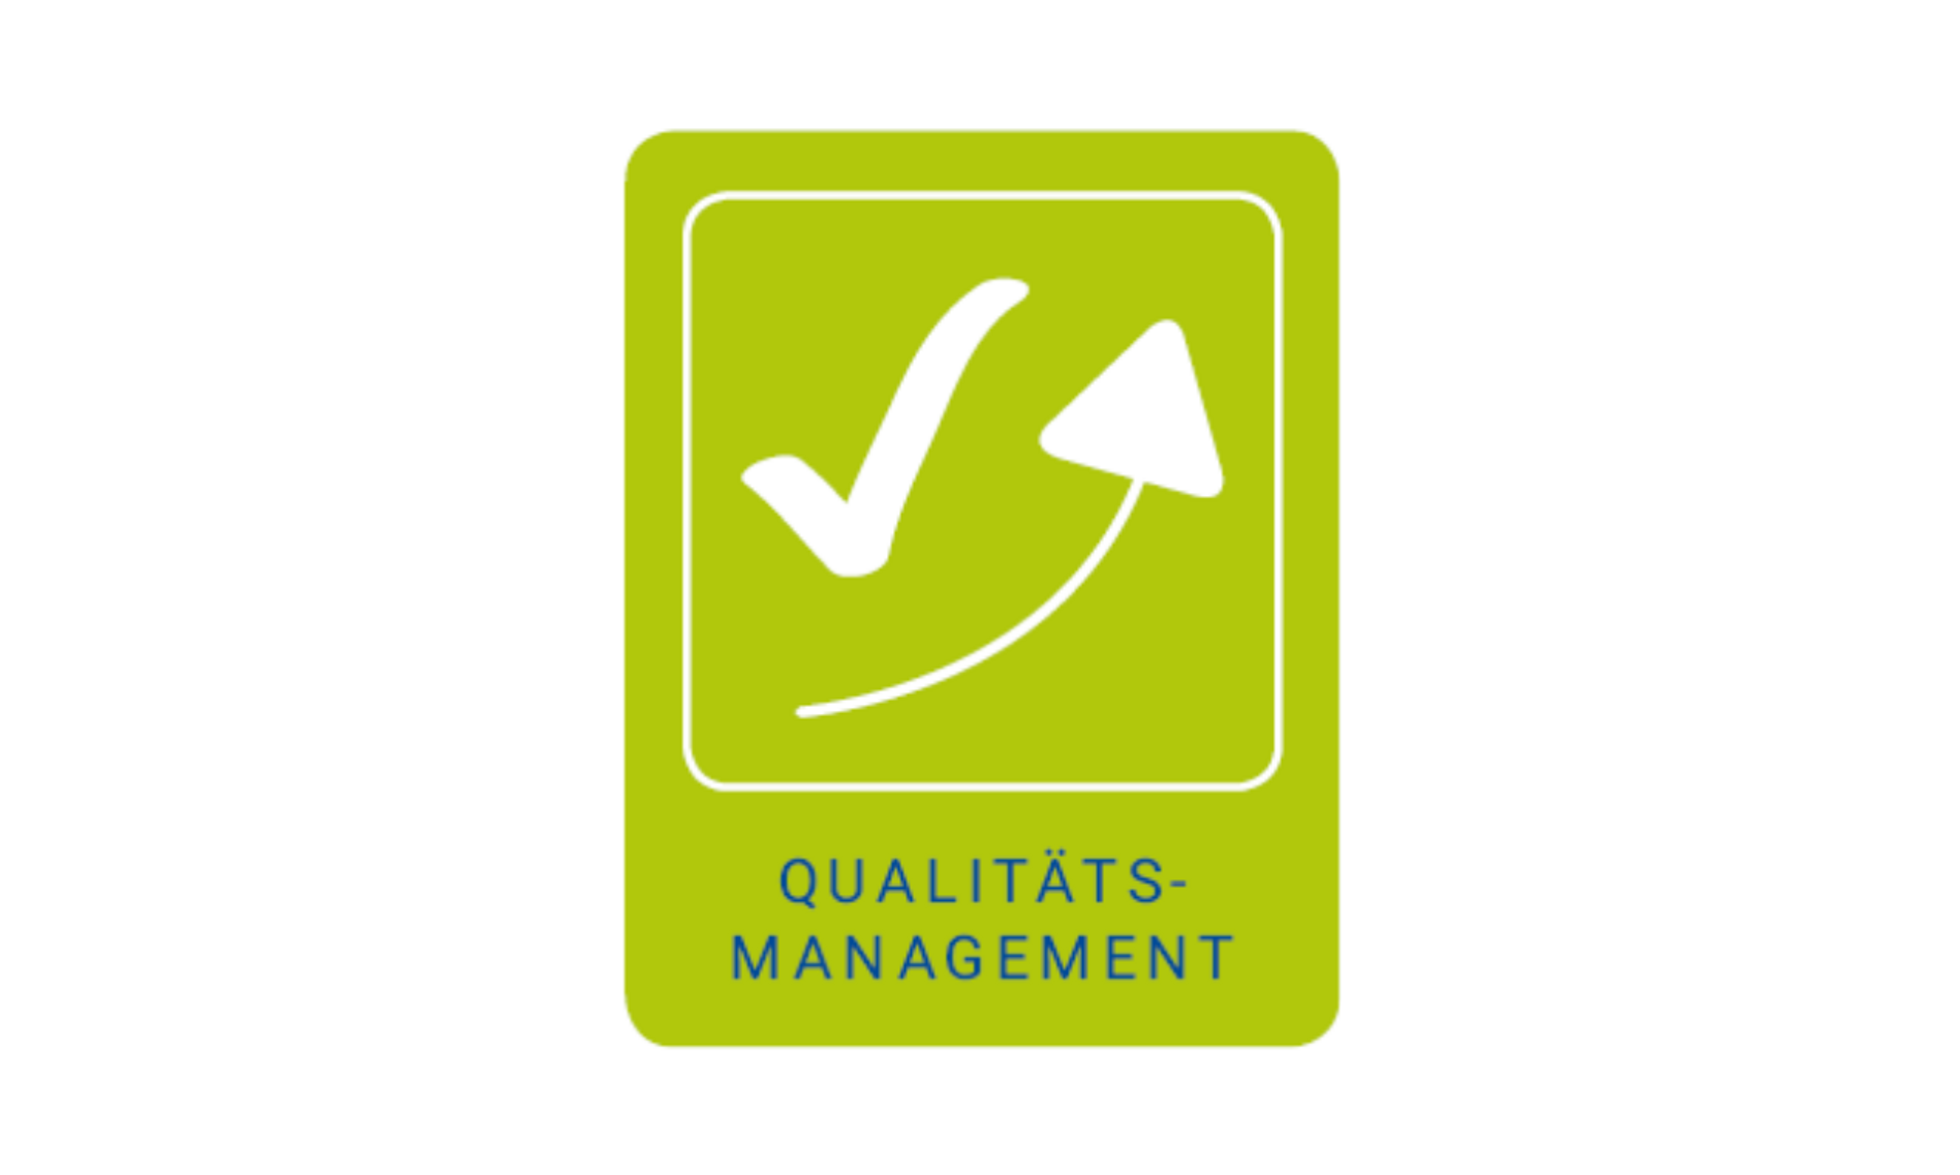 Logo Qualitätsmanagement: Ein nach oben zeigender Pfeil und Haken